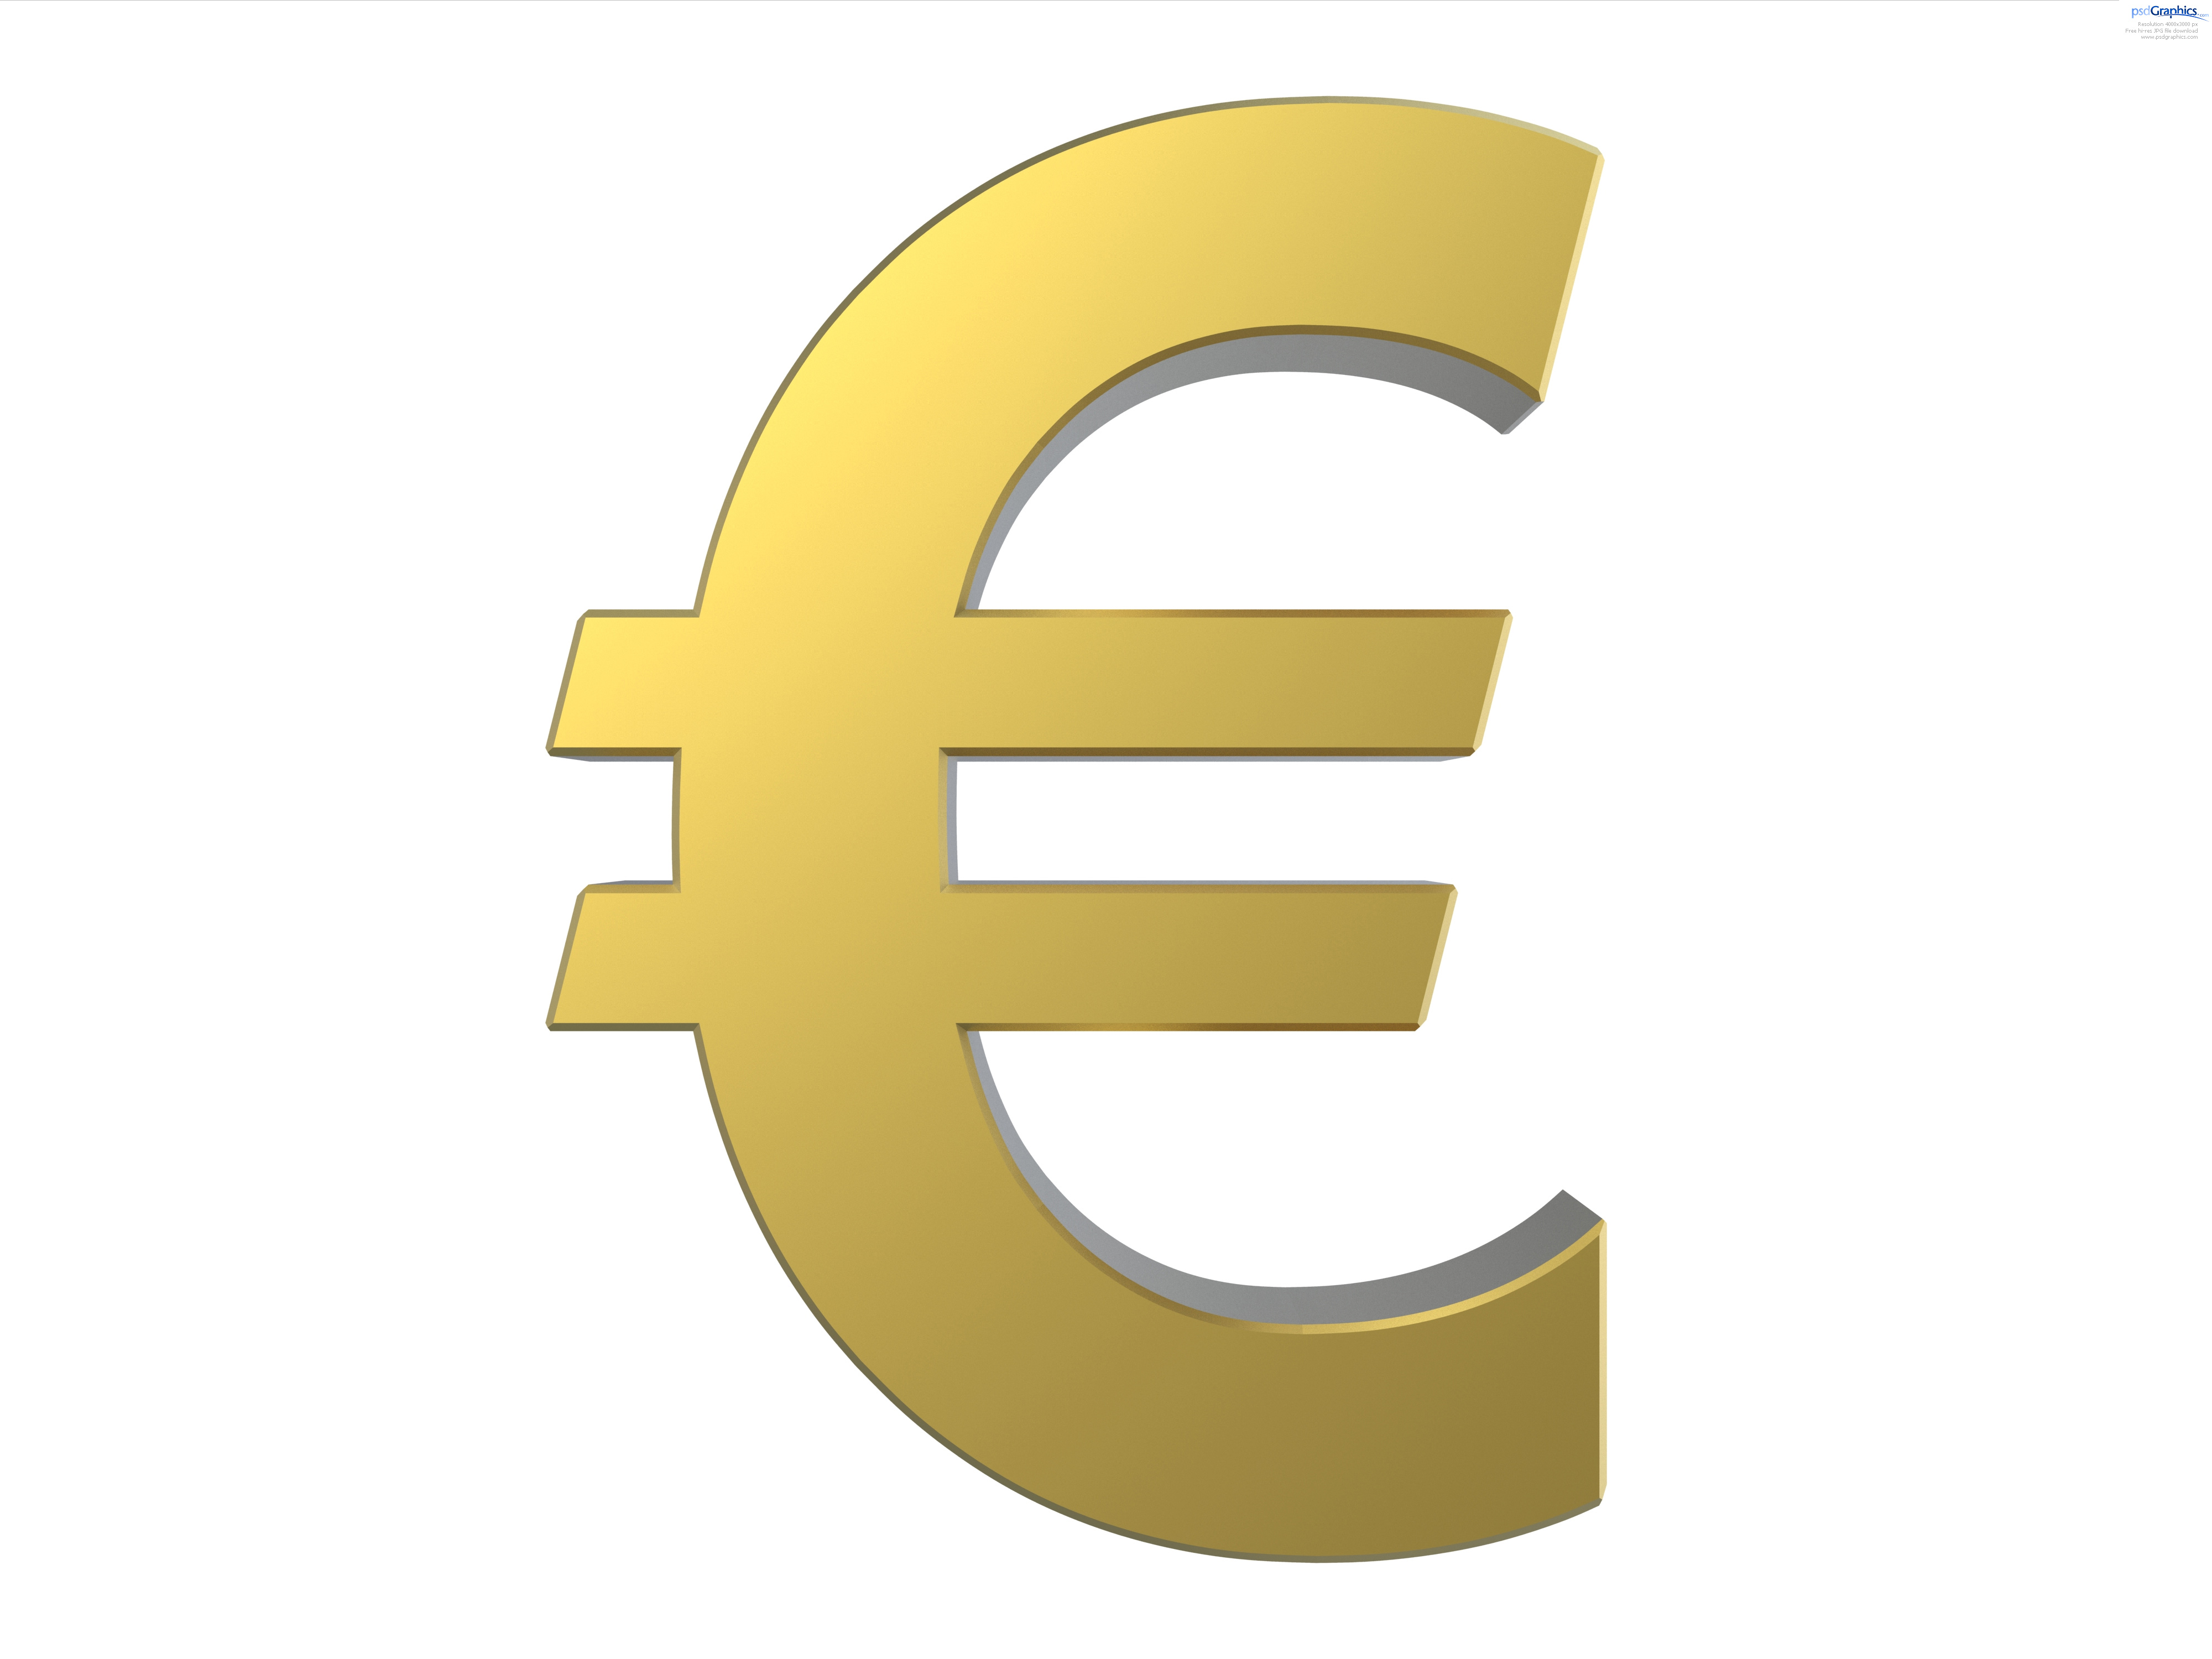 Közel 2 milliárd eurót utalt át a pénzügyminisztériumnak az Európai Bizottság